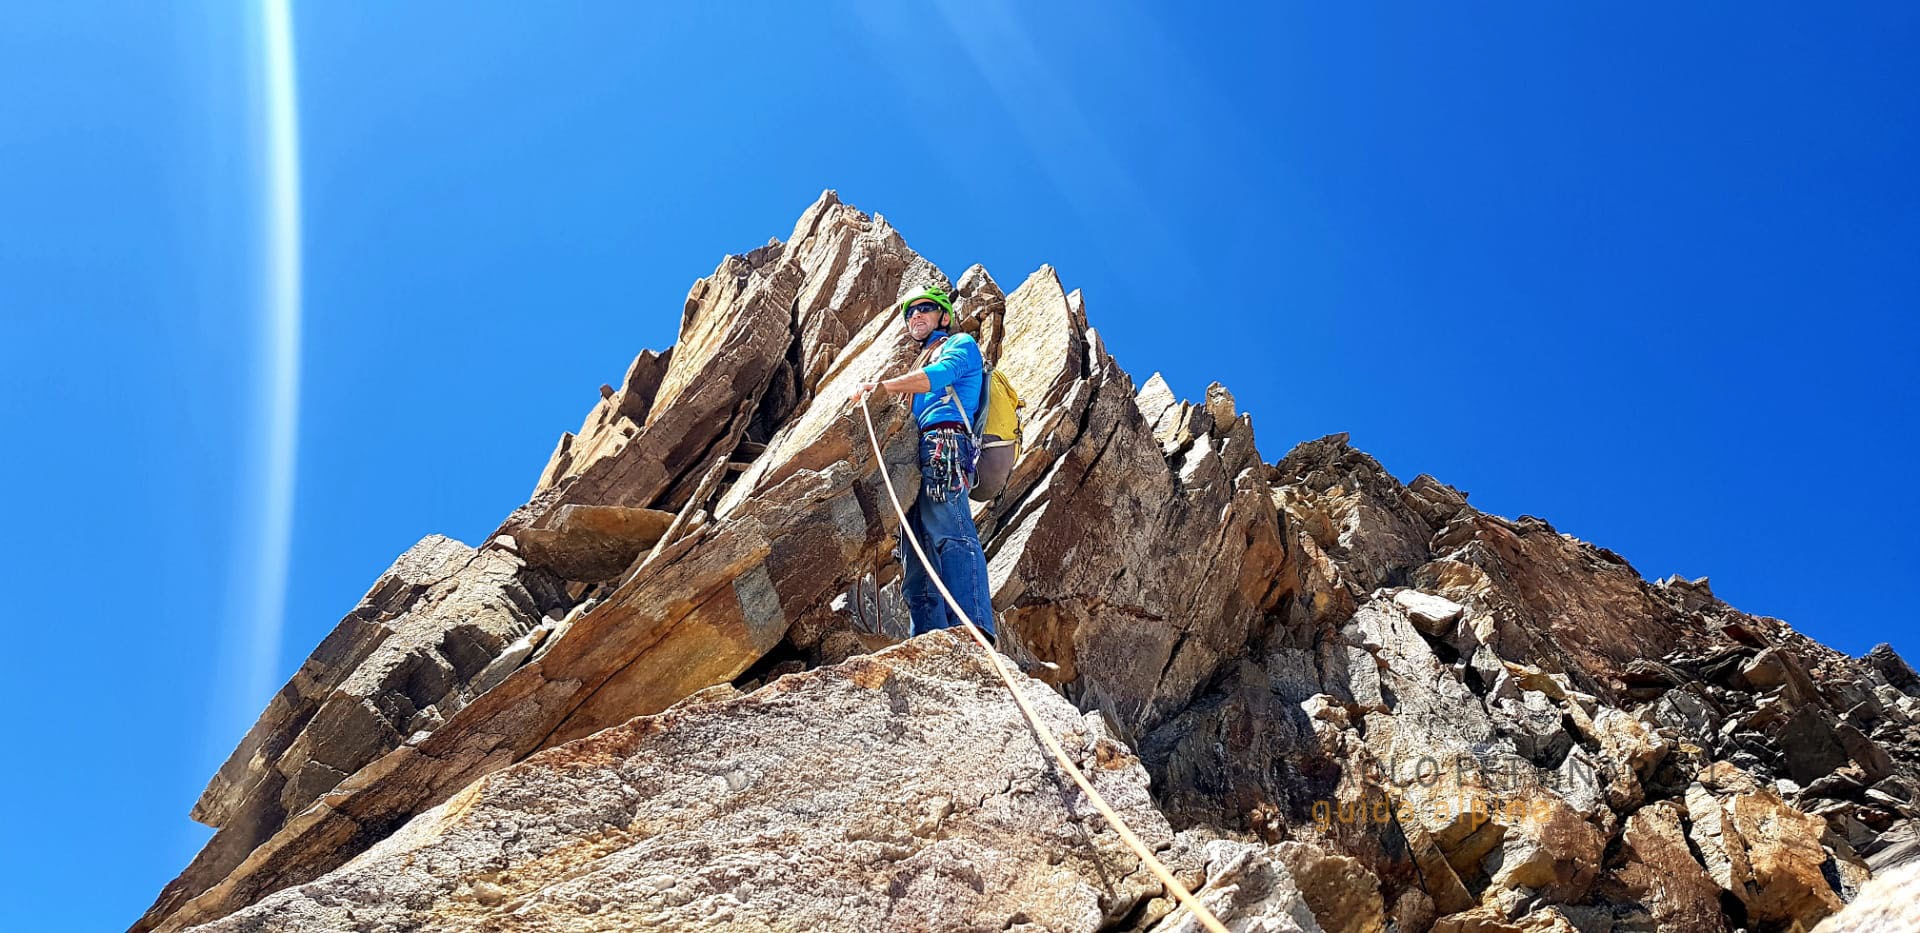 giordani vincent elena - 2 di 2 - alpinismo_paolo pettinaroli guida alpina